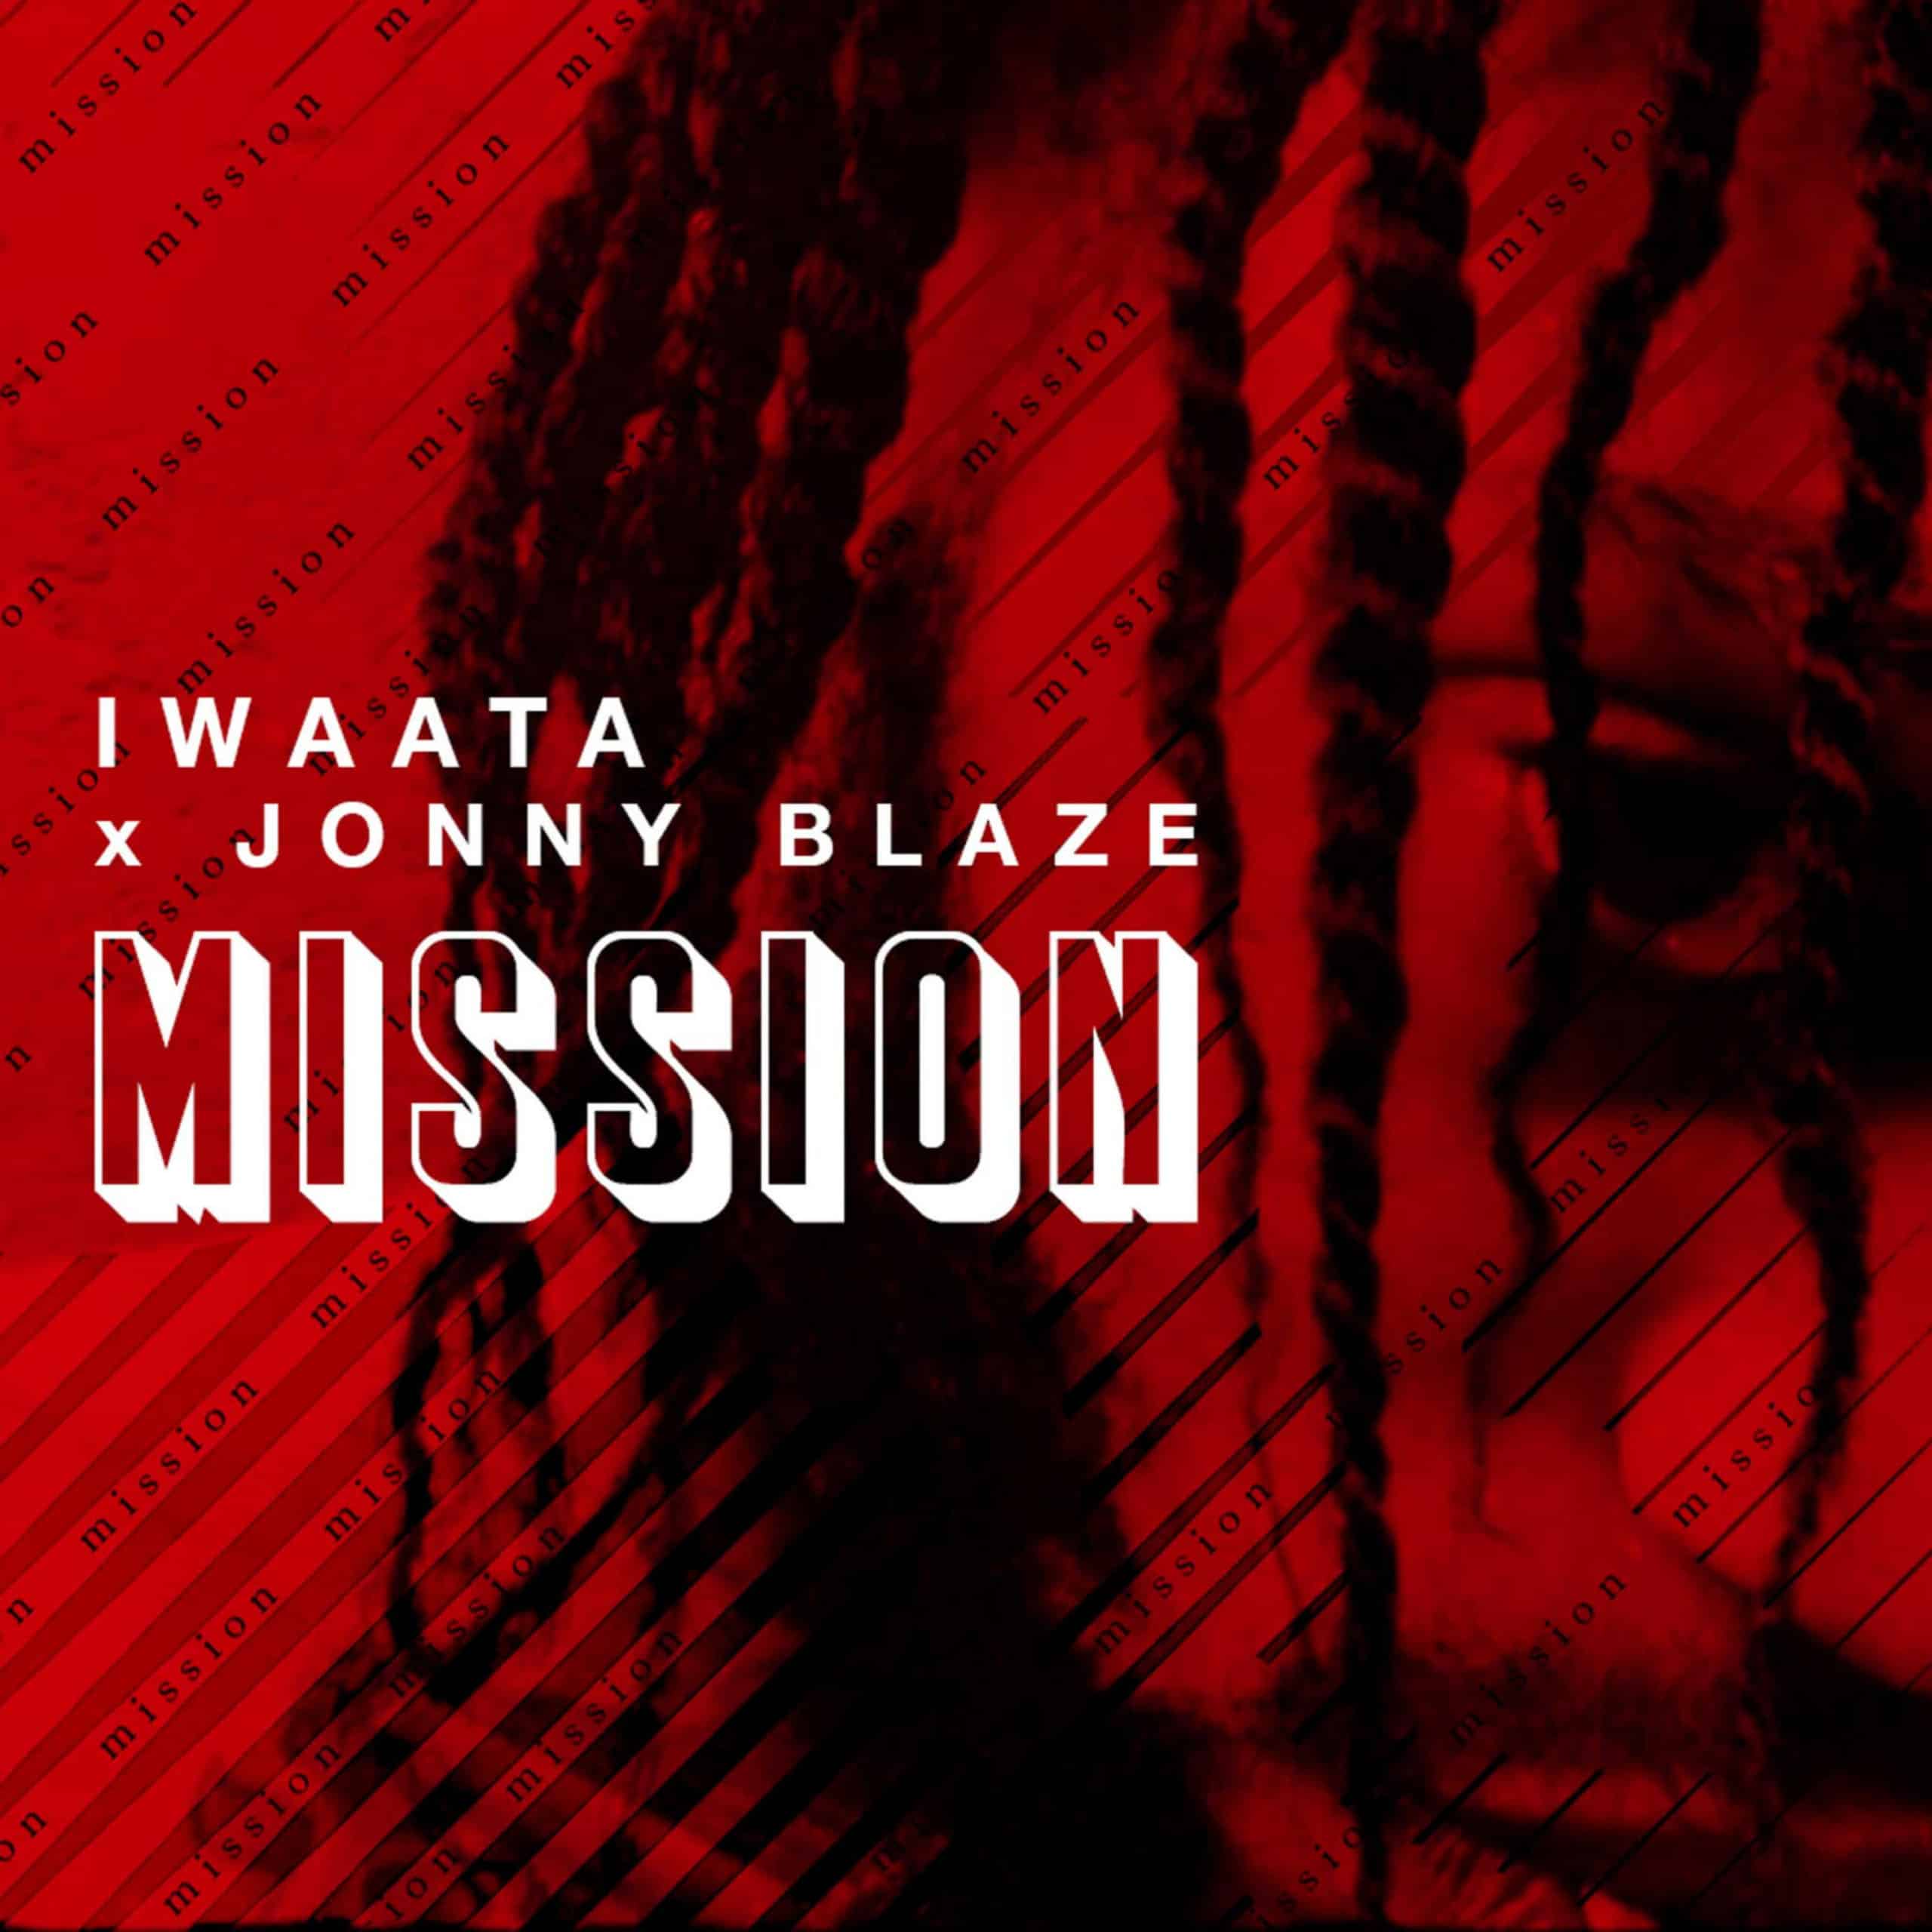 Iwaata & Jonny Blaze - Mission